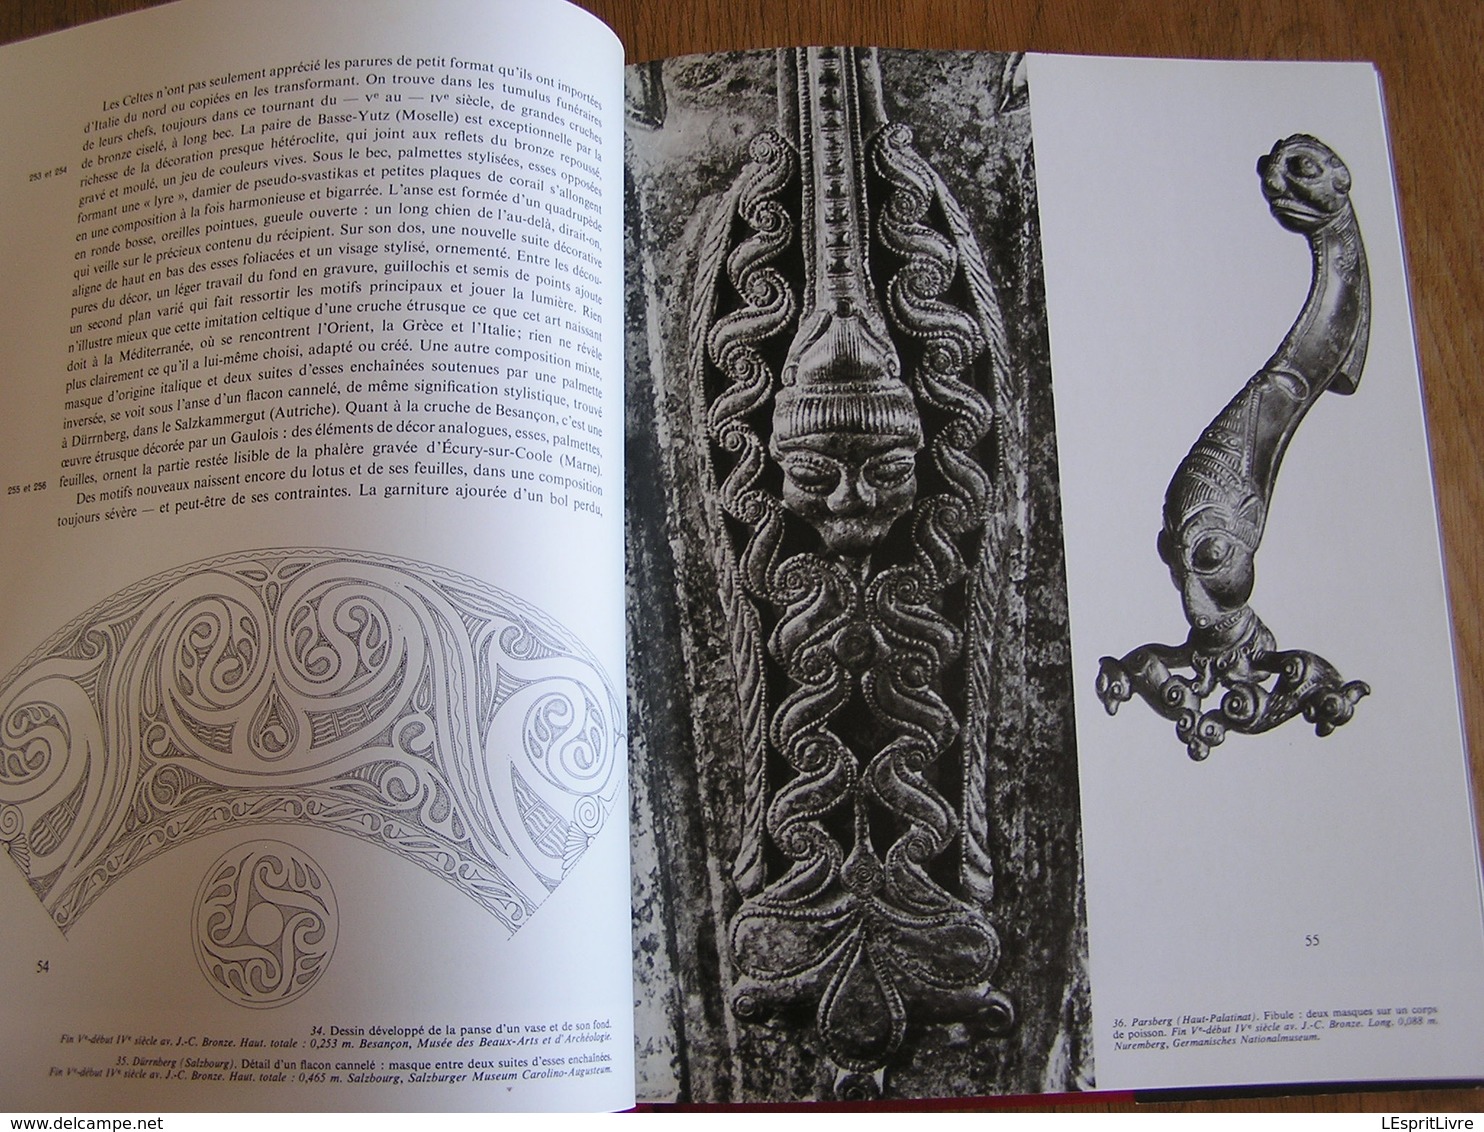 LES CELTES Histoire Beaux Arts Art Celtique Objets Bijoux Parures Univers des Formes Celtiques Age du Fer Gaule Europe